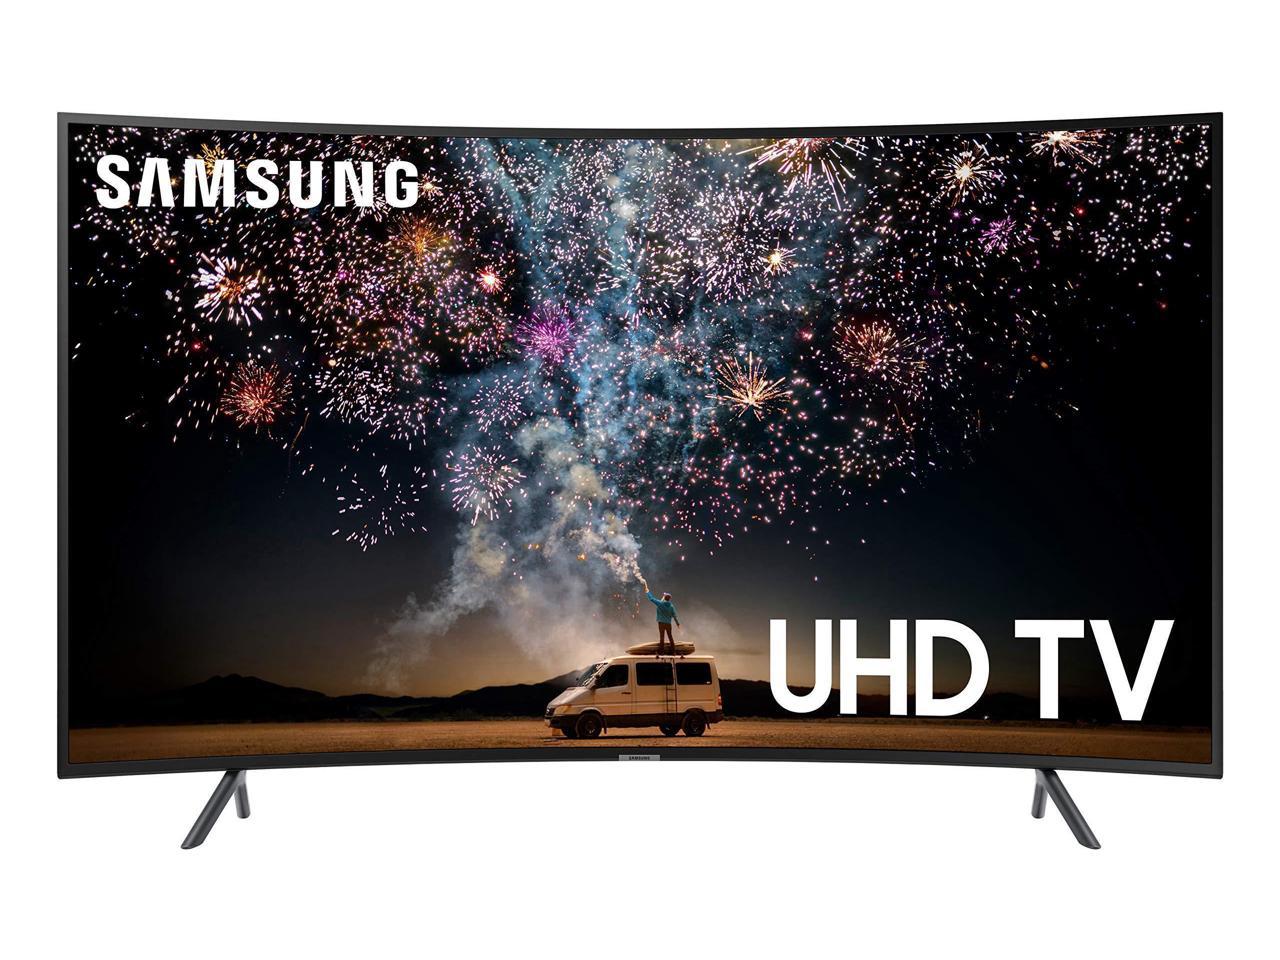 Samsung 7 Series UN65RU7300F - 65" Curved LED Smart TV - 4K UltraHD